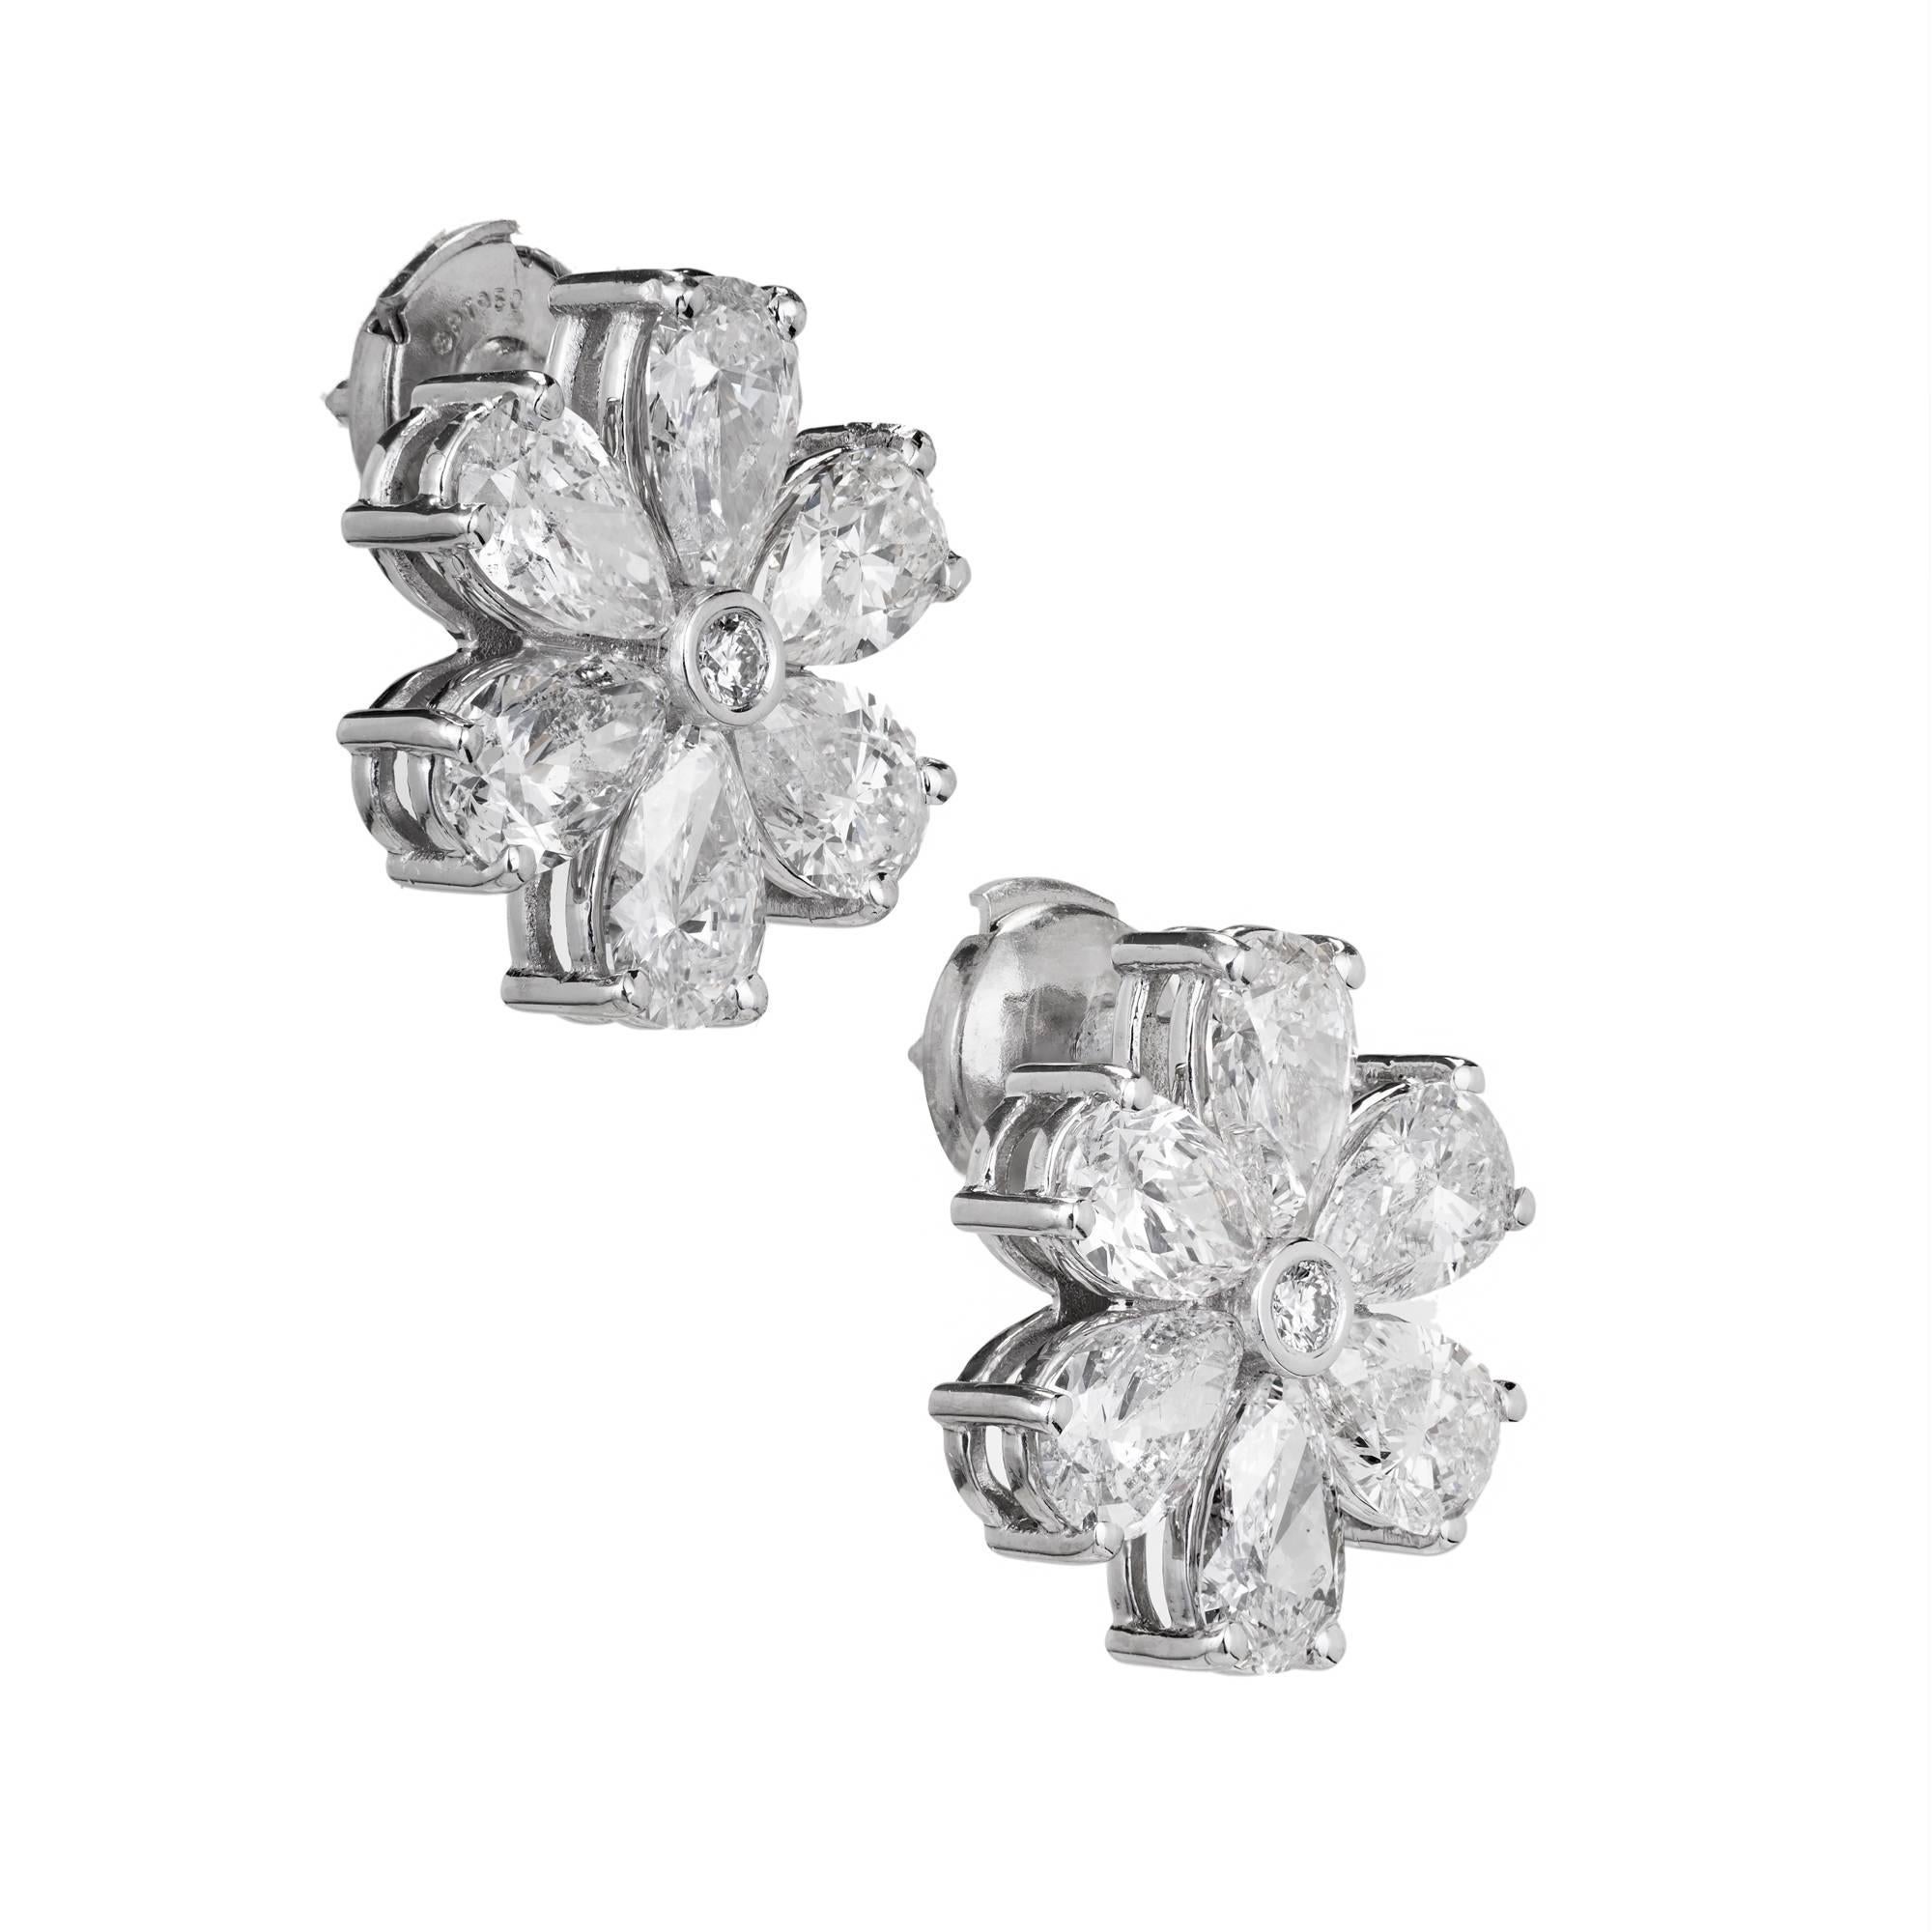 Peter Suchy Jewelers birnenförmige Diamant-Cluster-Ohrringe in handgefertigten Platinfassungen. Platinpfosten und La Pousette-Sicherheitsrückwände.

2 runde Diamanten, Gesamtgewicht ca. 0,04cts
12 birnenförmige Diamanten, Gesamtgewicht ca. 6,70cts,